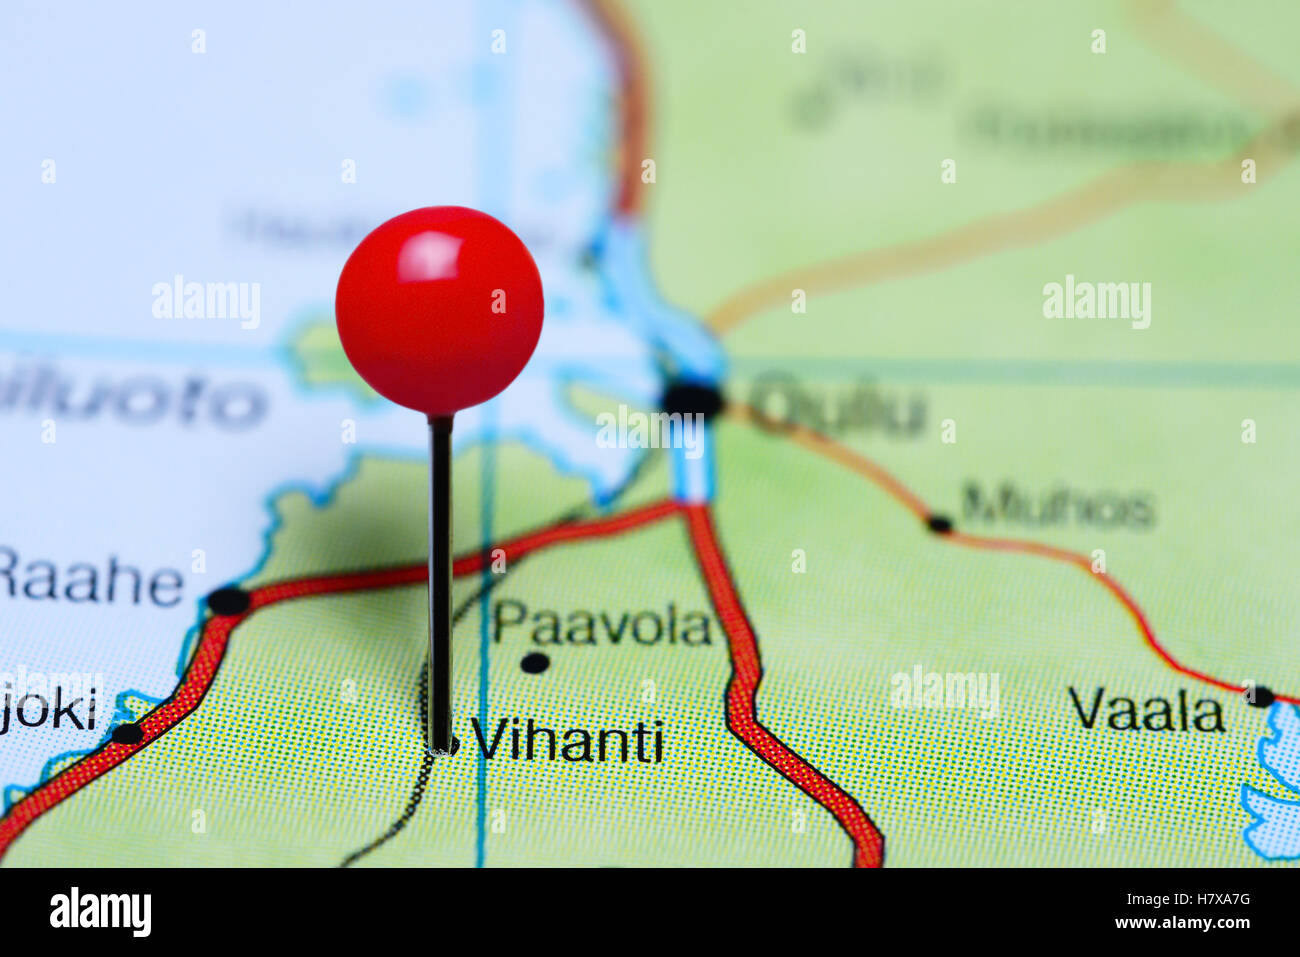 Vihanti pinned on a map of Finland Stock Photo